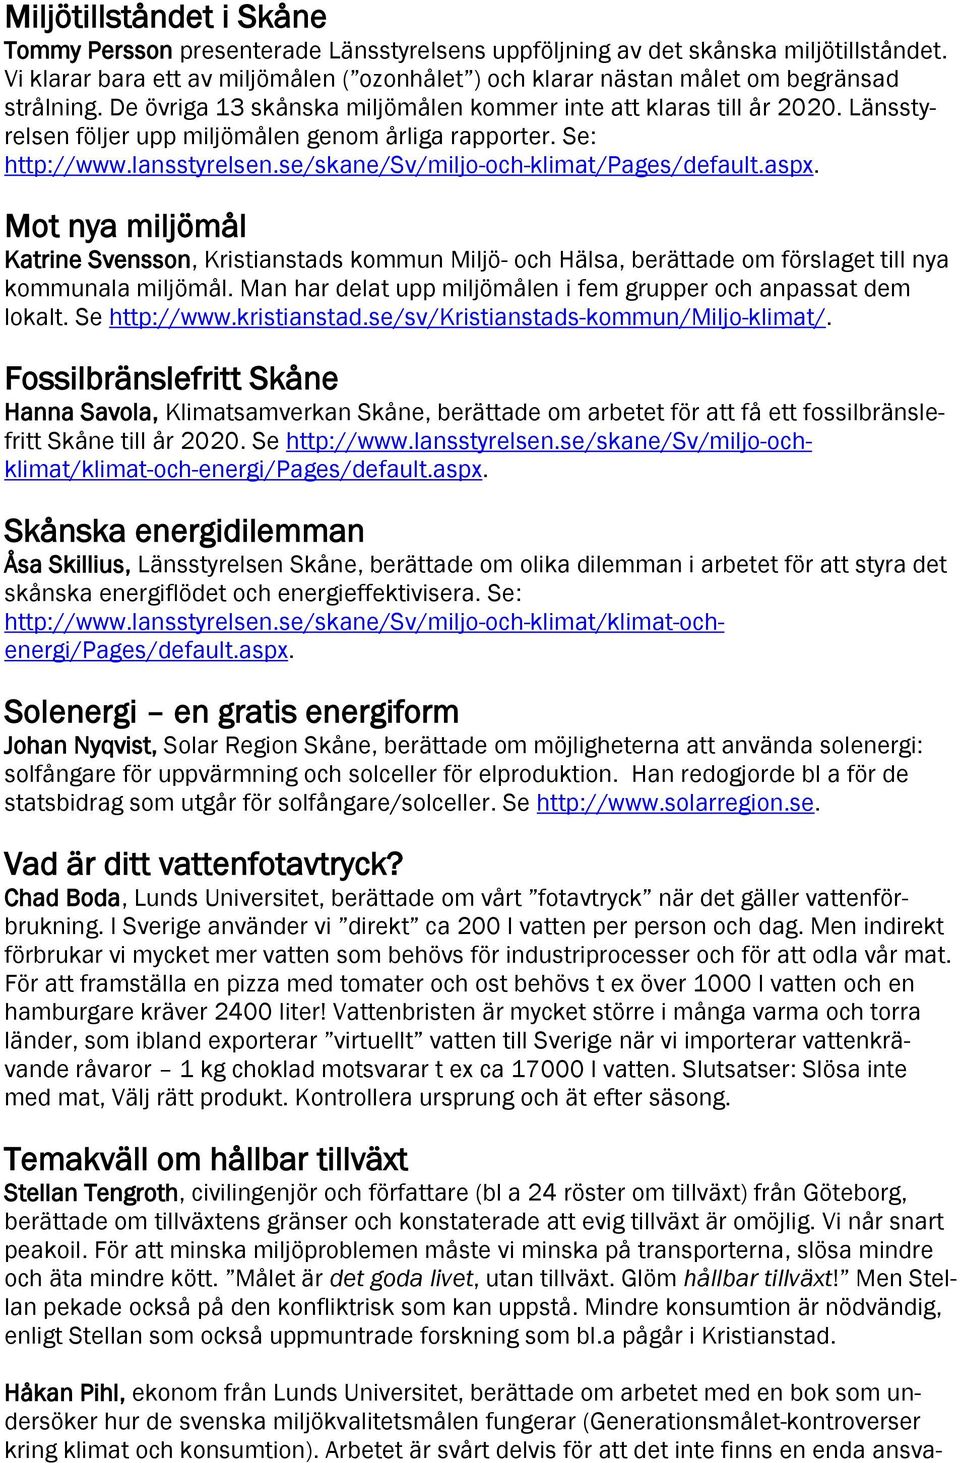 Länsstyrelsen följer upp miljömålen genom årliga rapporter. Se: http://www.lansstyrelsen.se/skane/sv/miljo-och-klimat/pages/default.aspx.